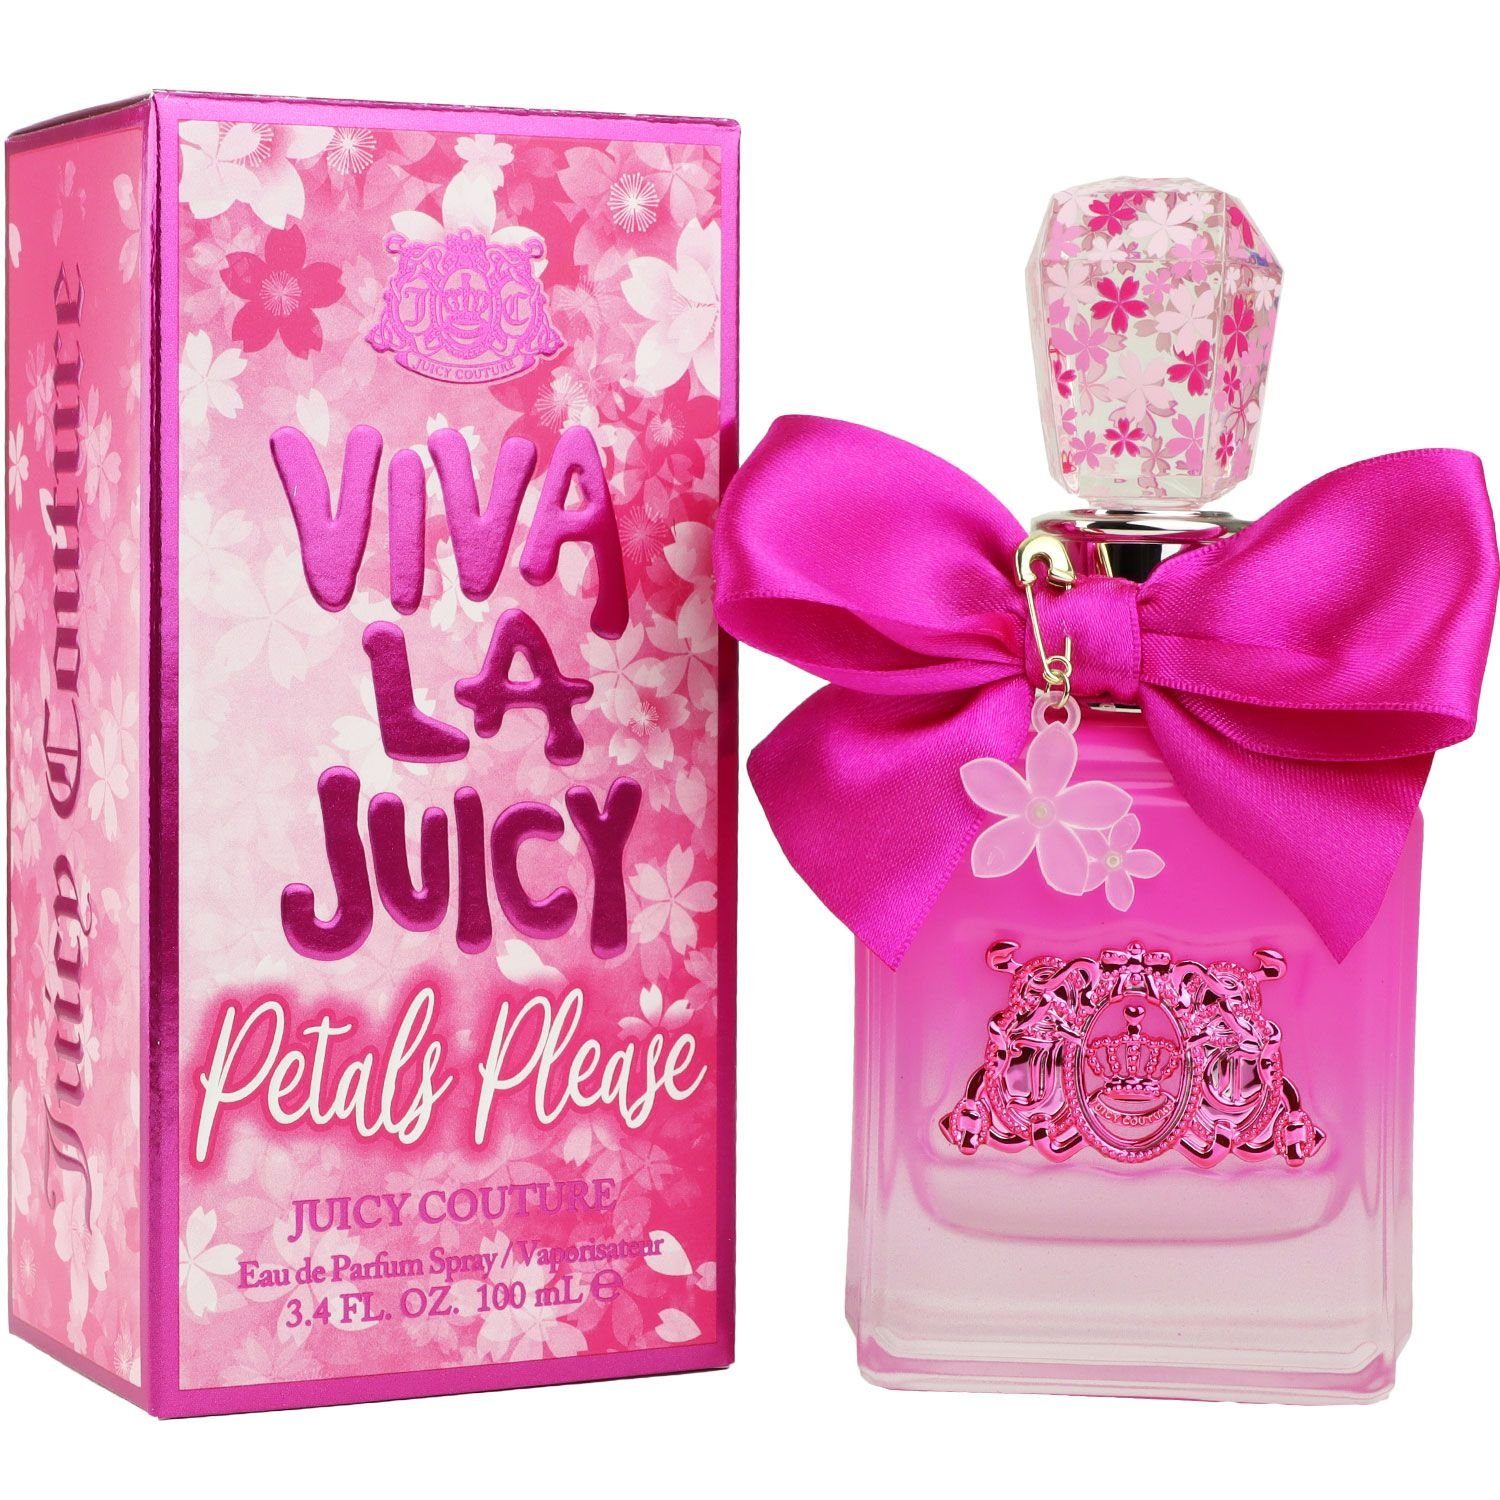 Juicy Couture Eau de Viva ml La Juicy Parfum Petals 100 Please